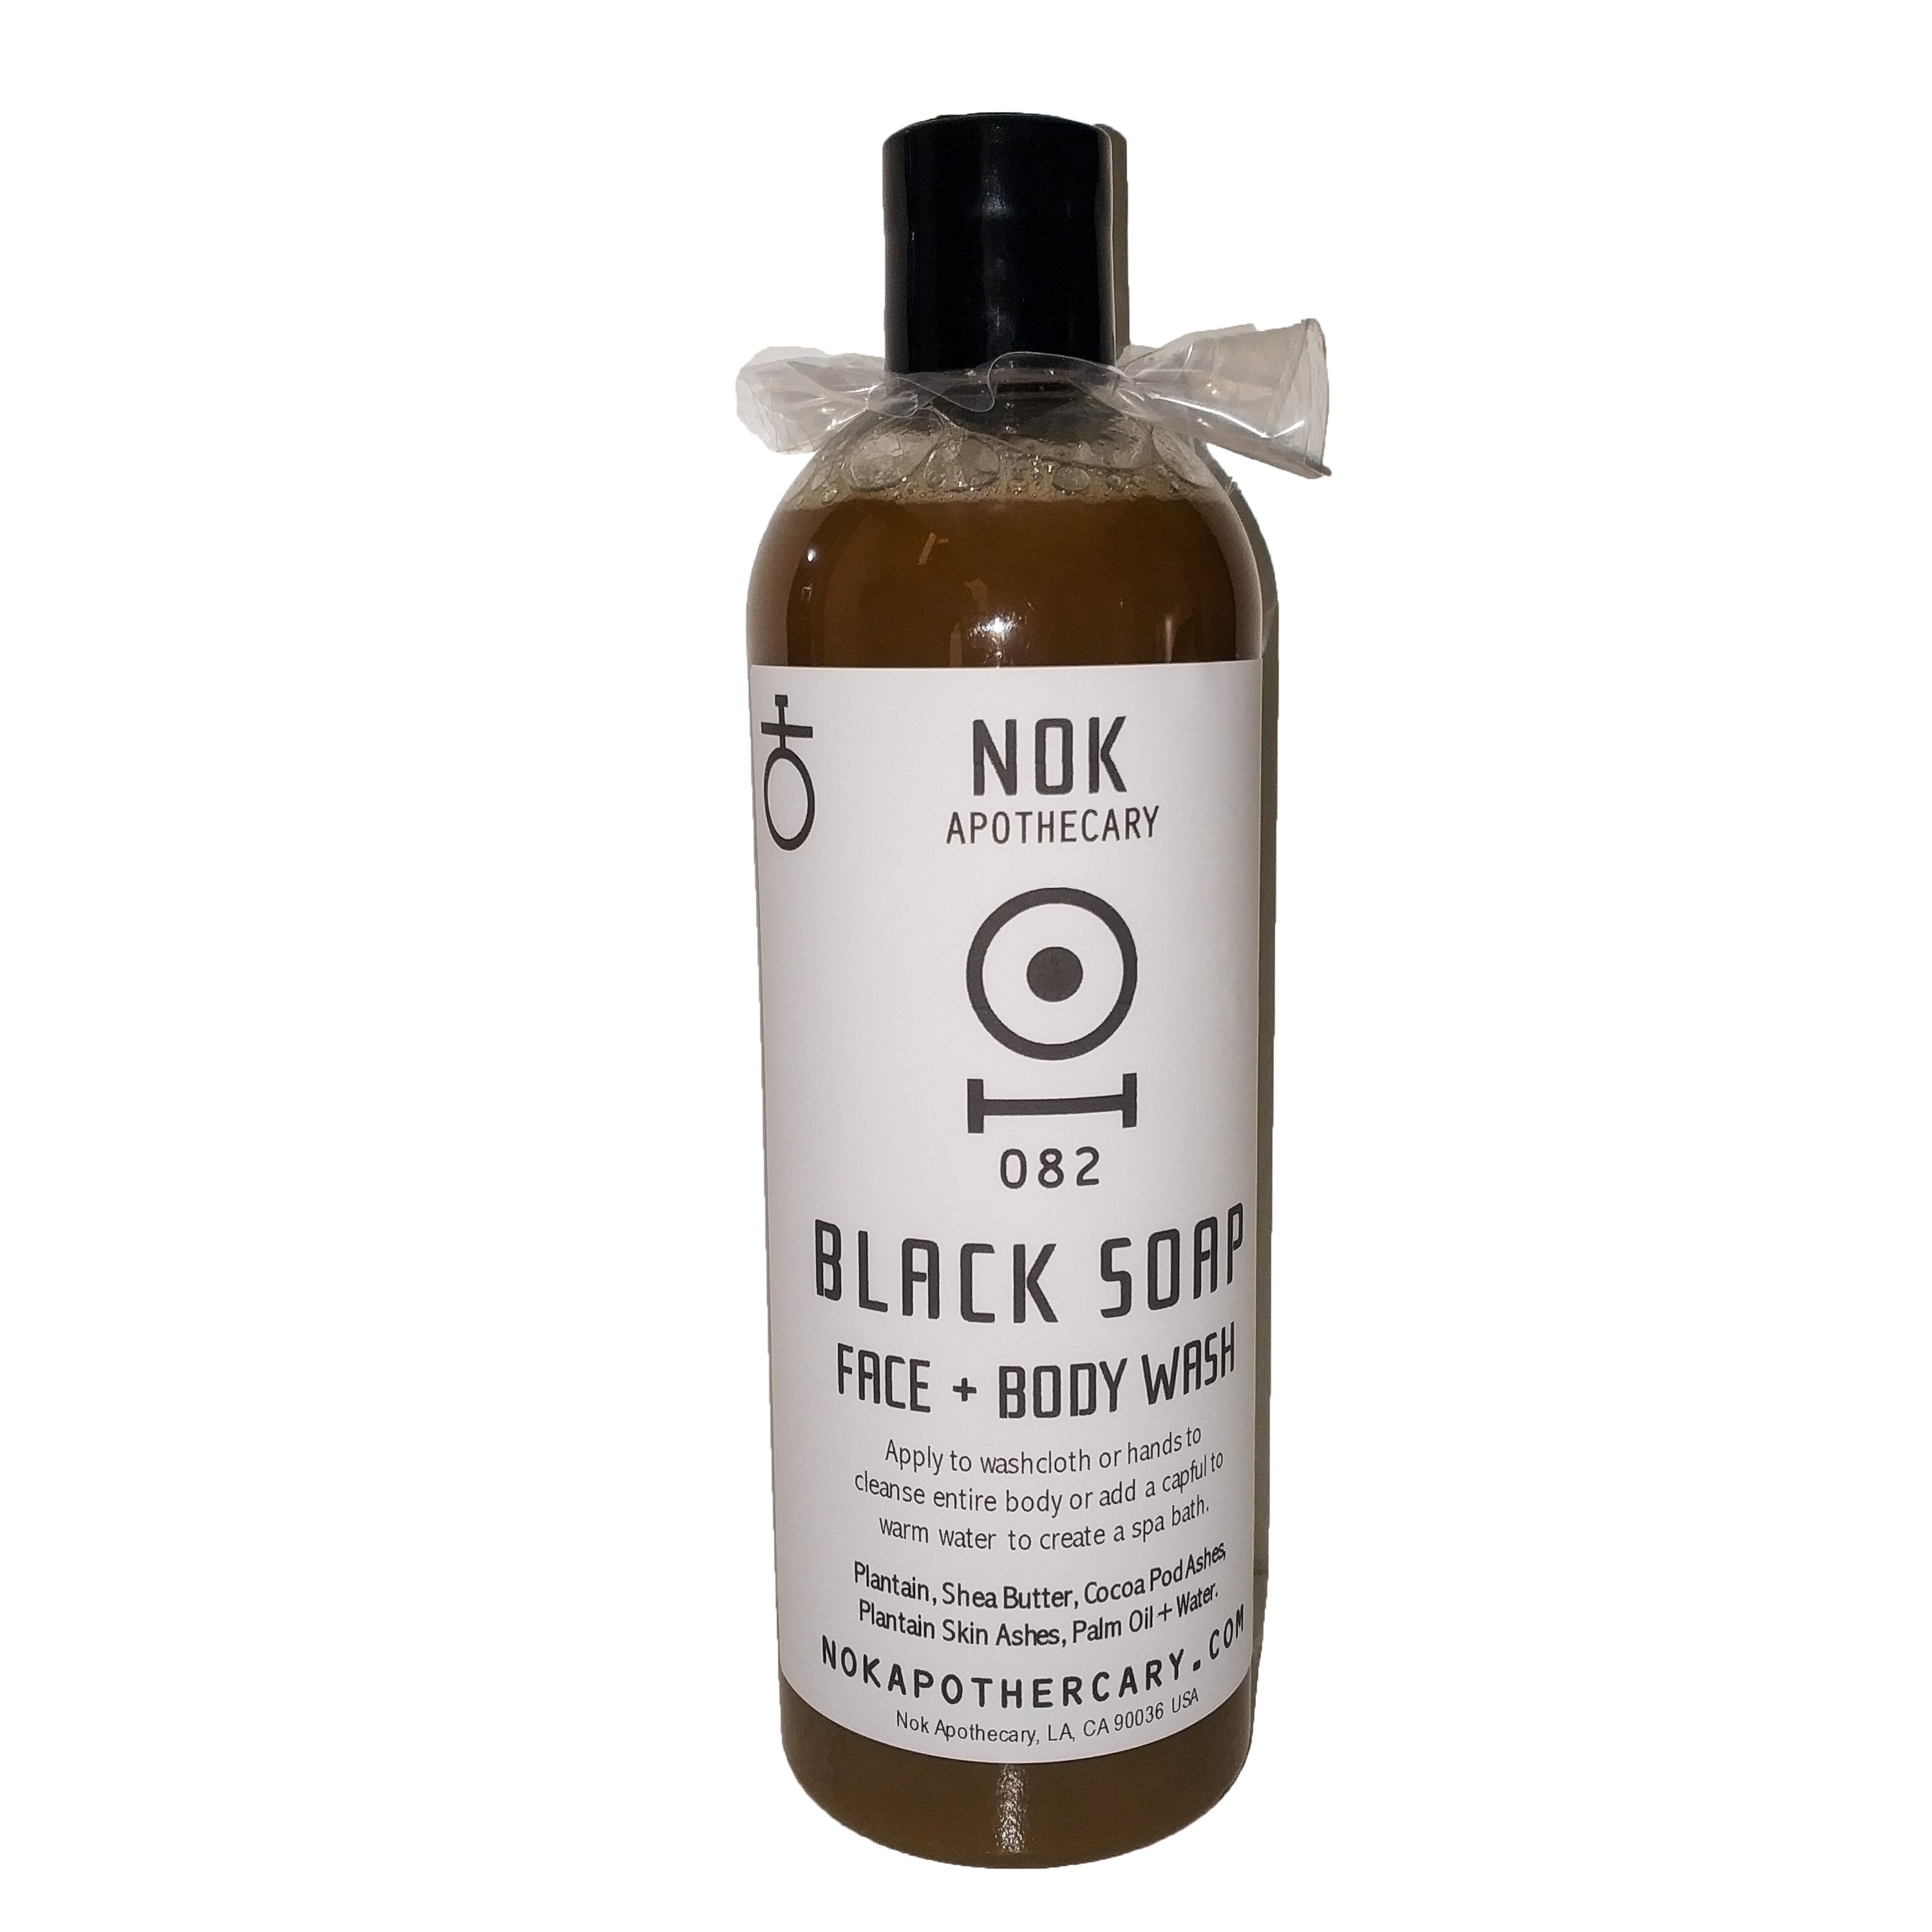 Black Soap Face, Hair + Body Wash | 082 - The Nok Apothecary